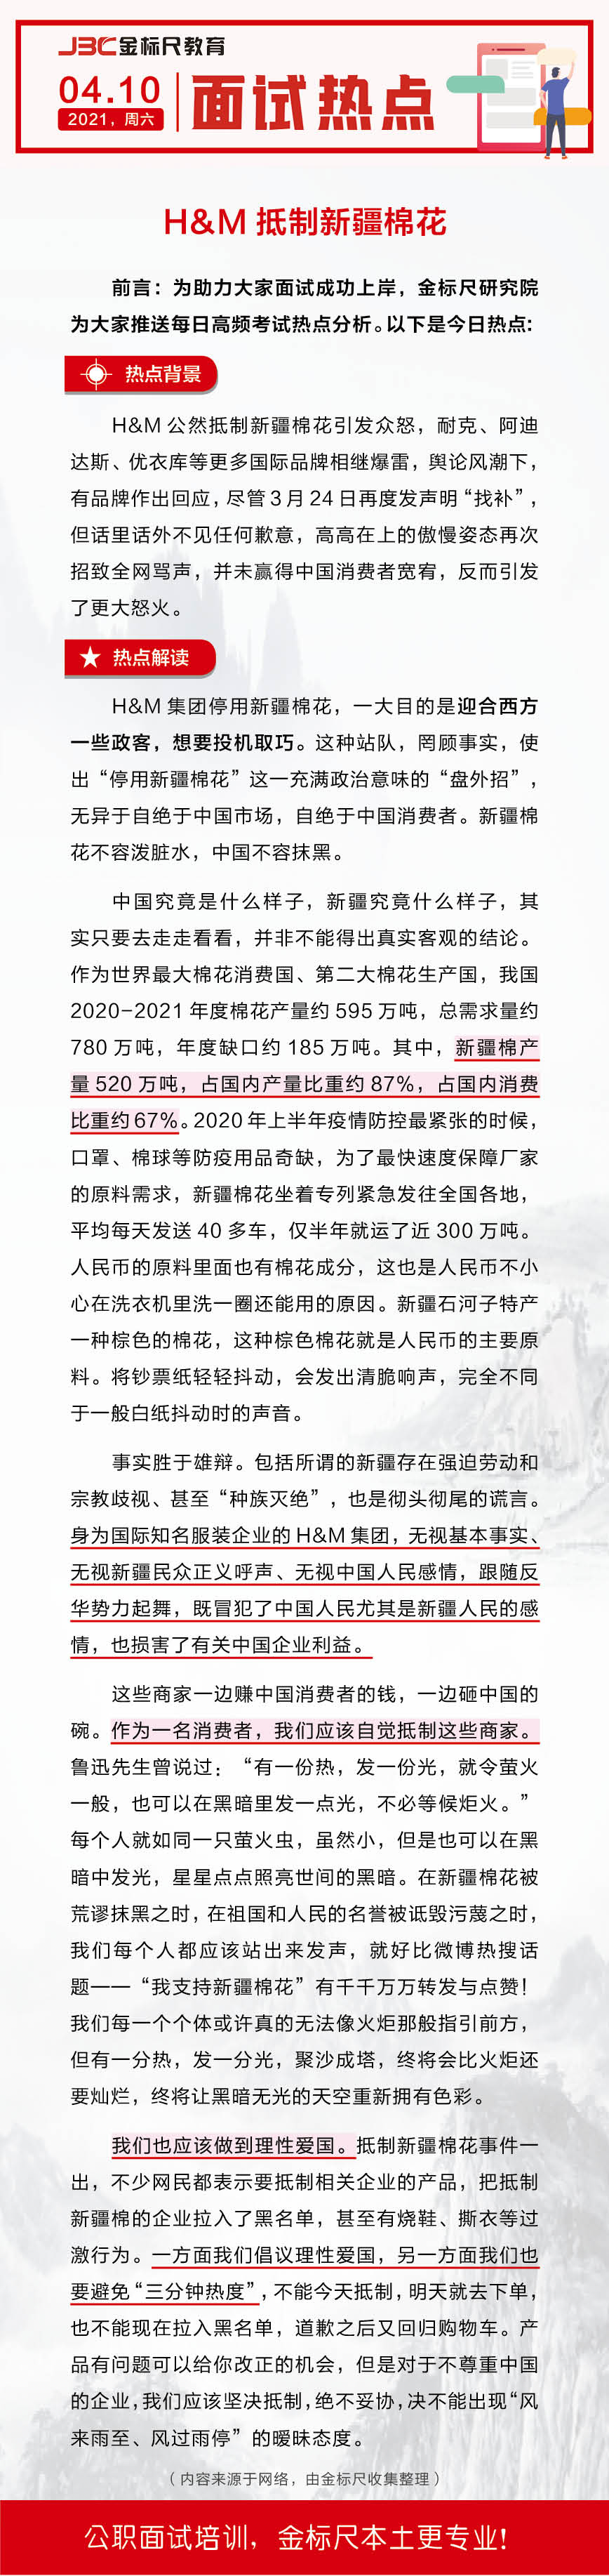 【面试预测】H&M抵制新疆棉花